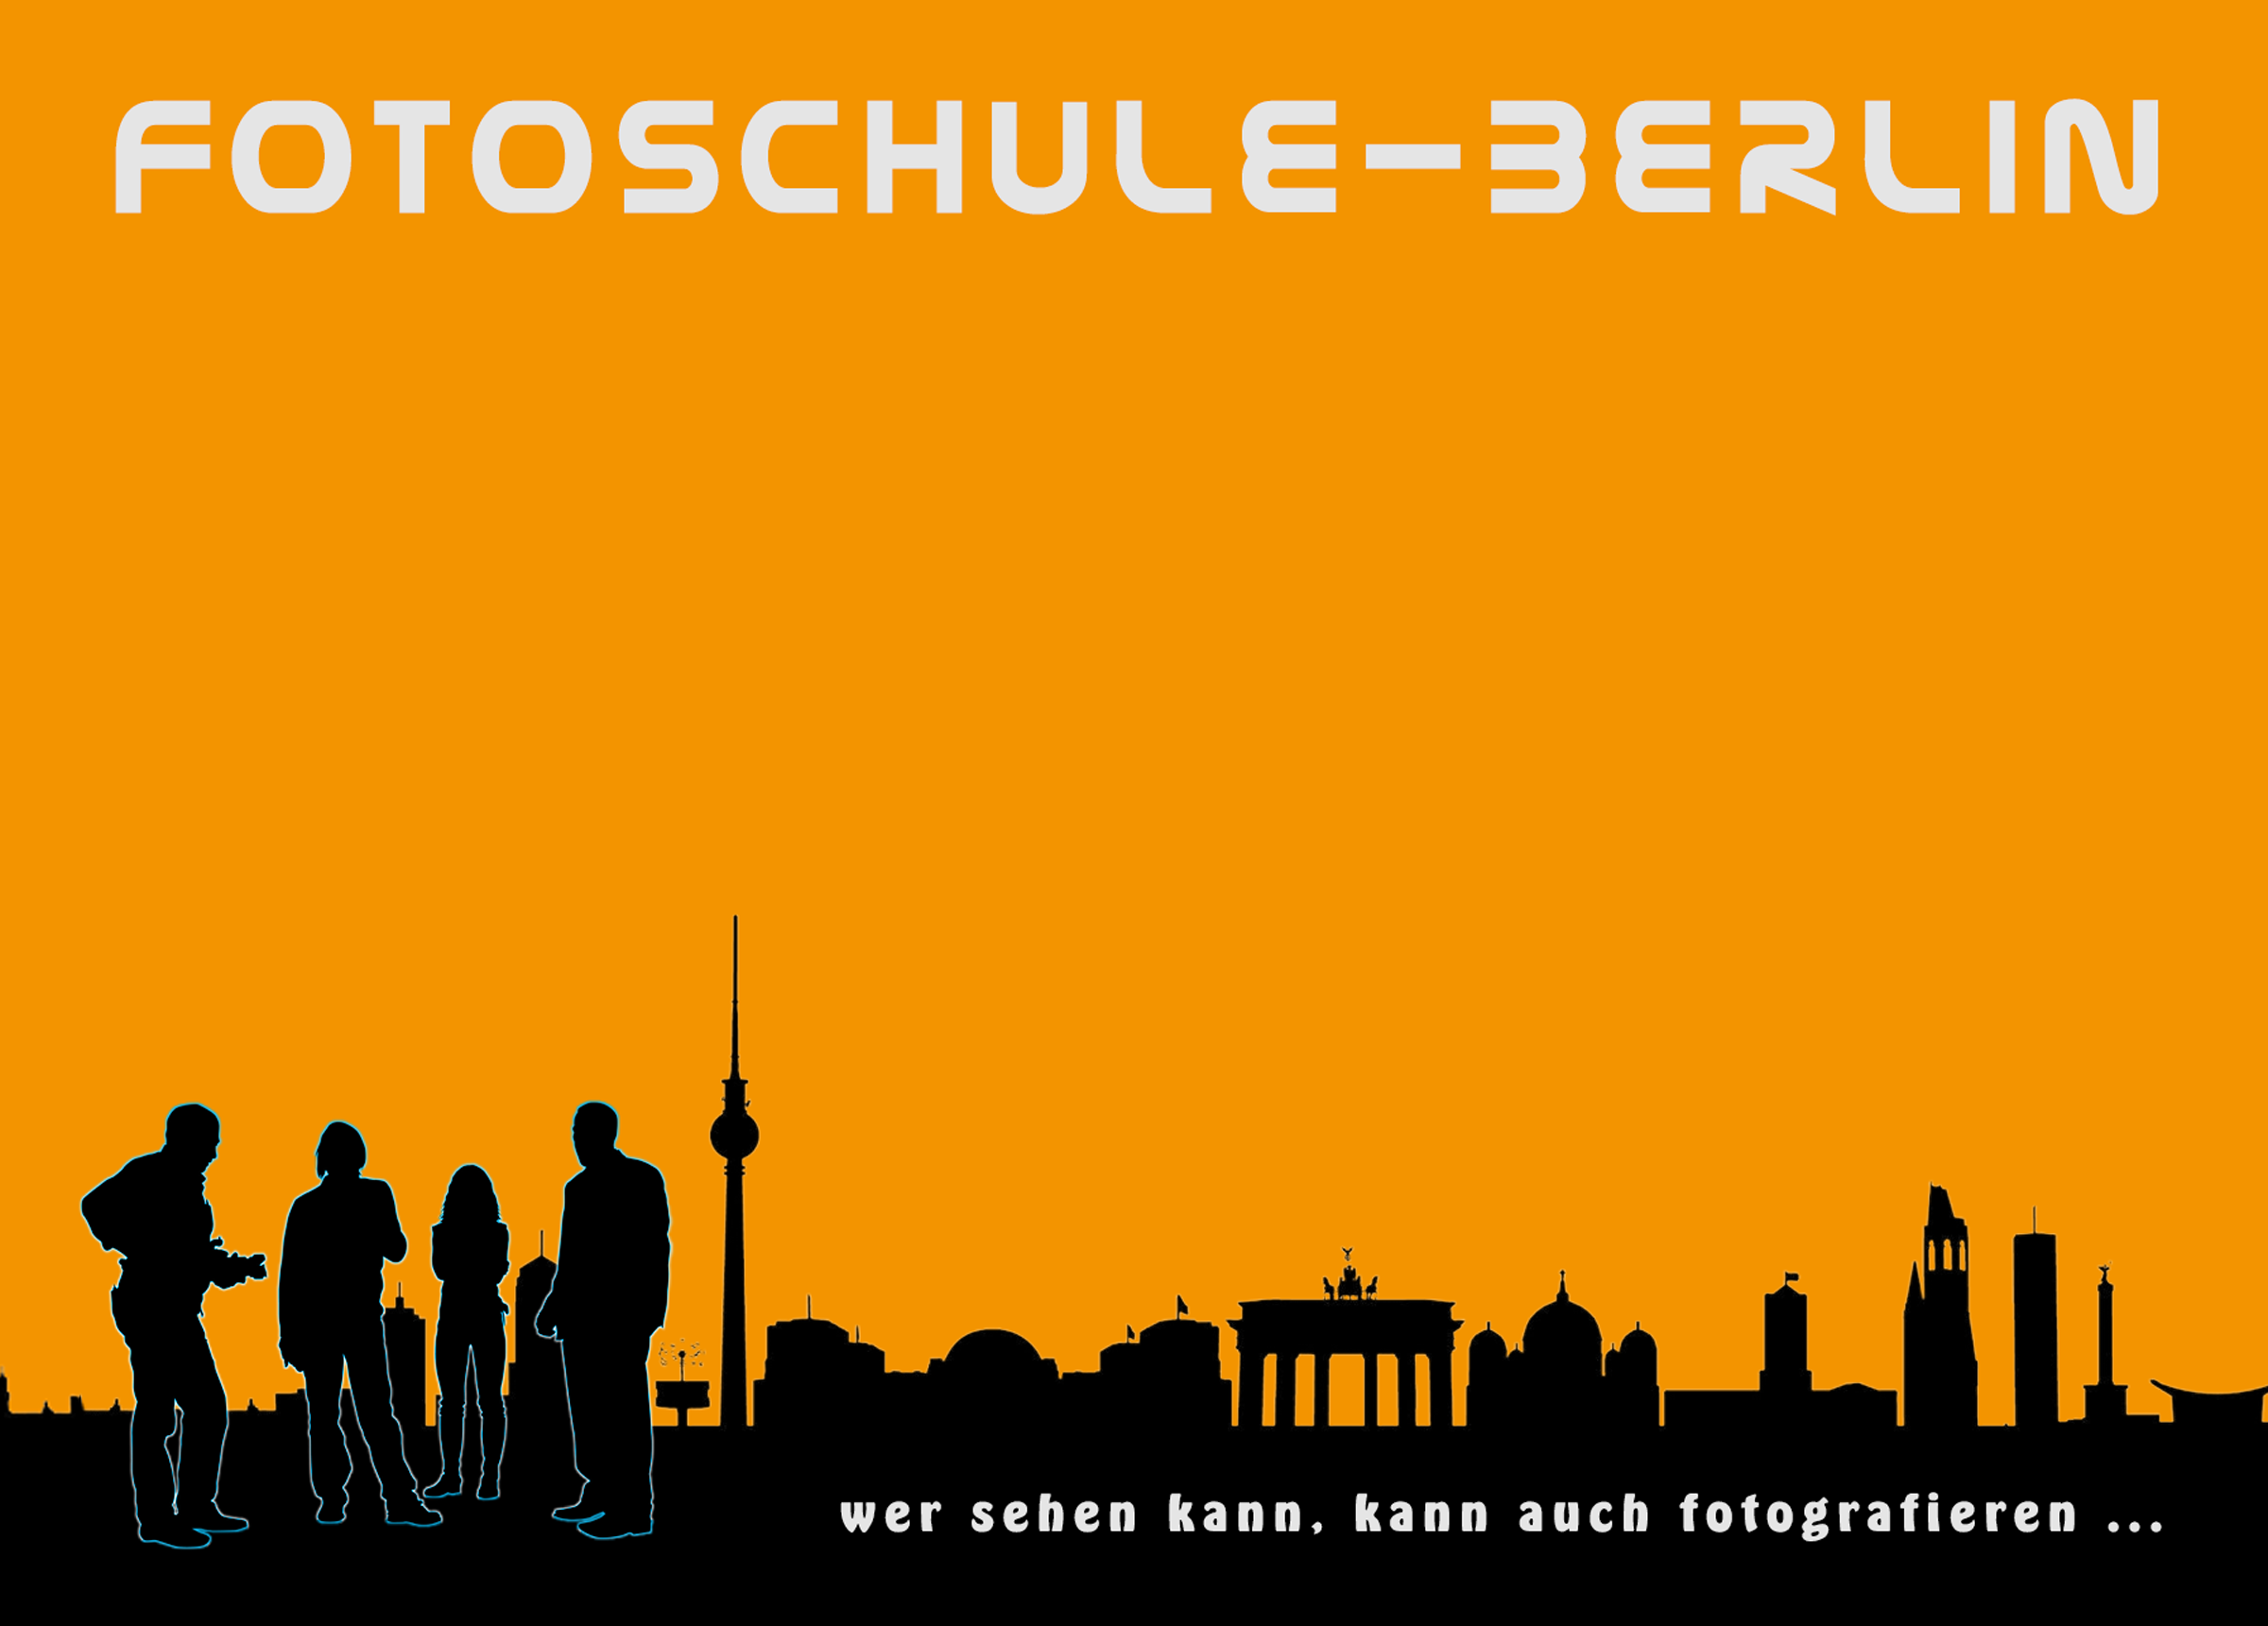 Fotoschule Berlin